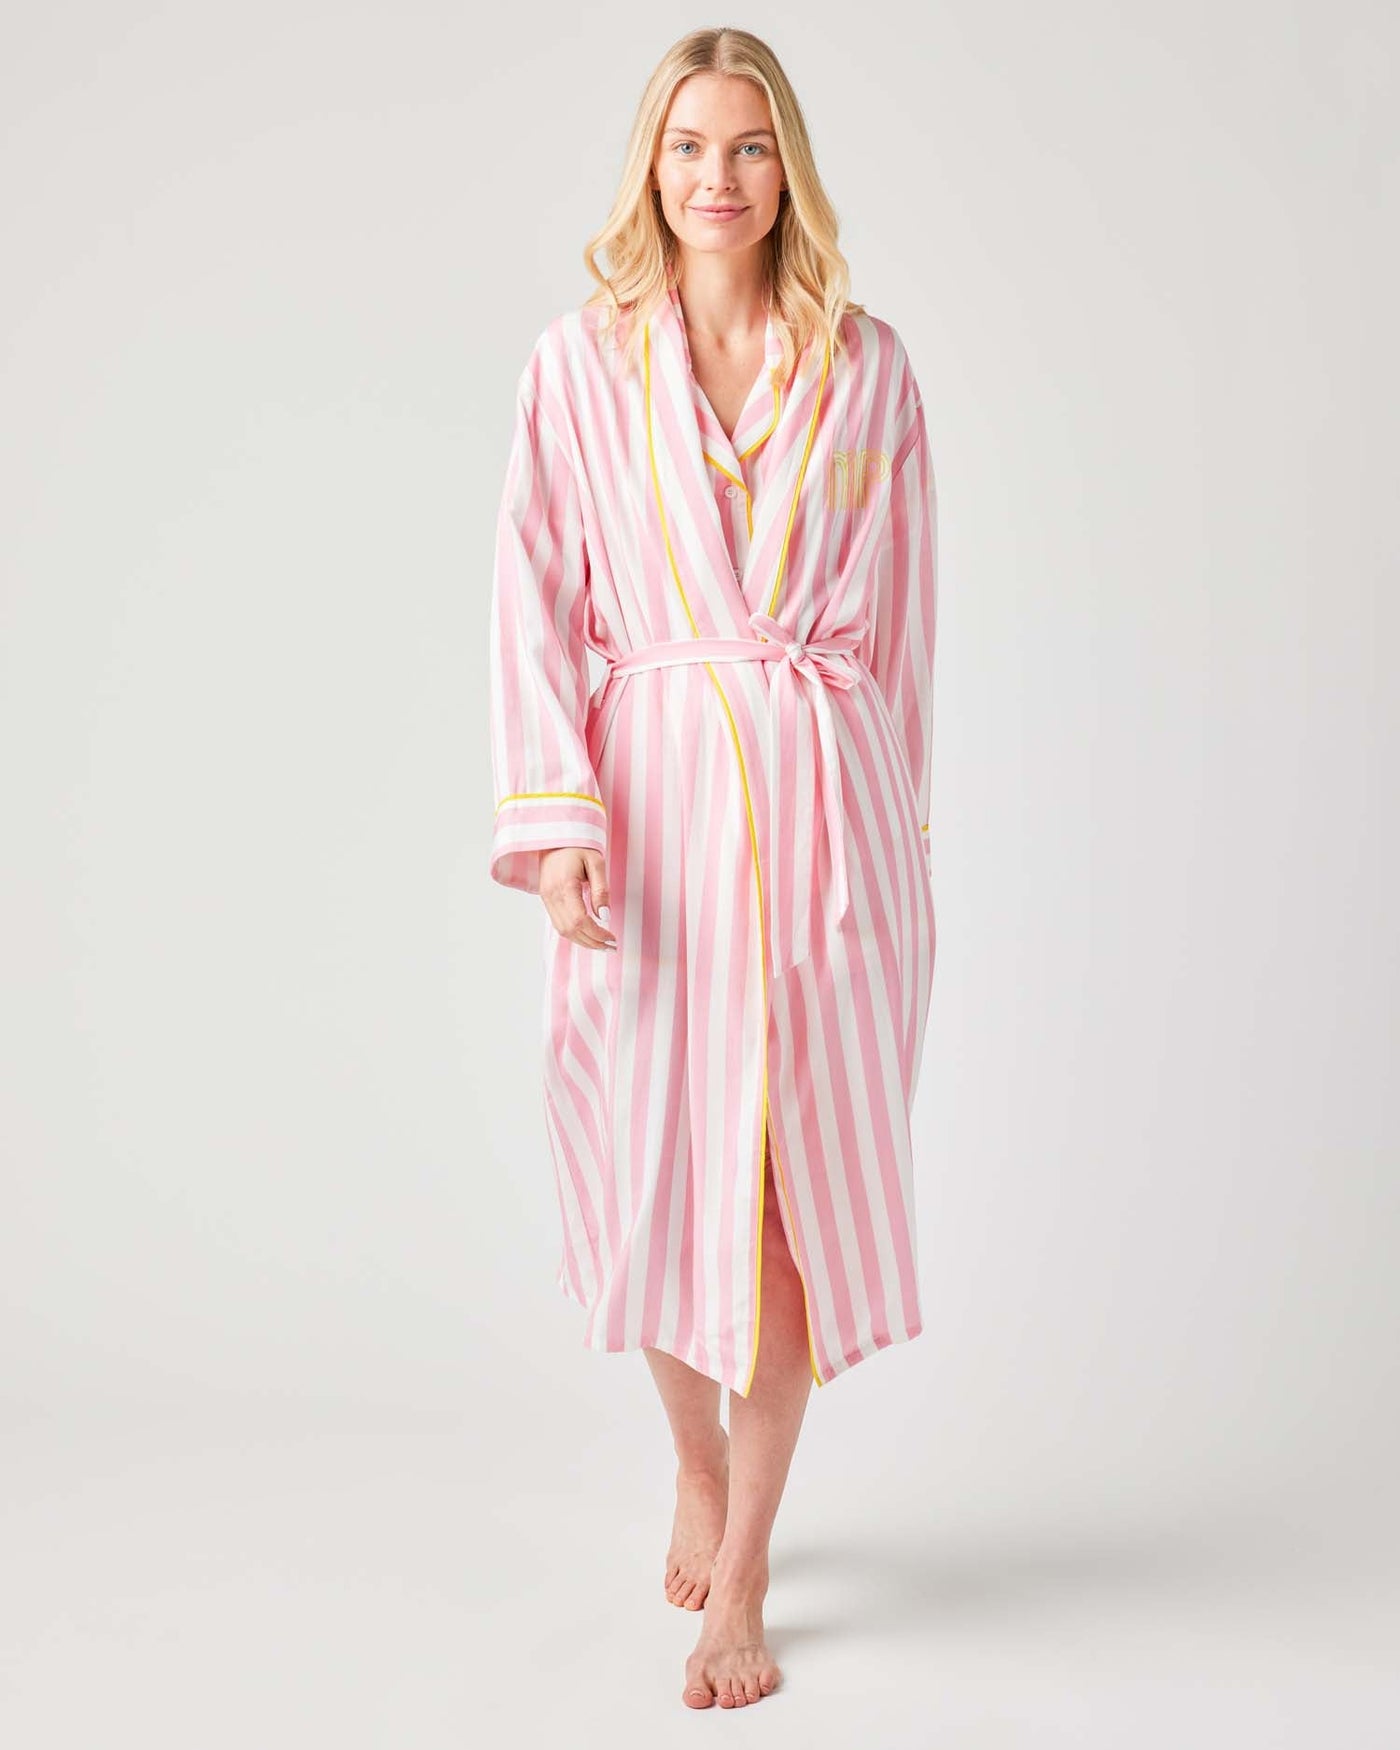 Retro Striped Robe Robe Pink / S/M Katie Kime